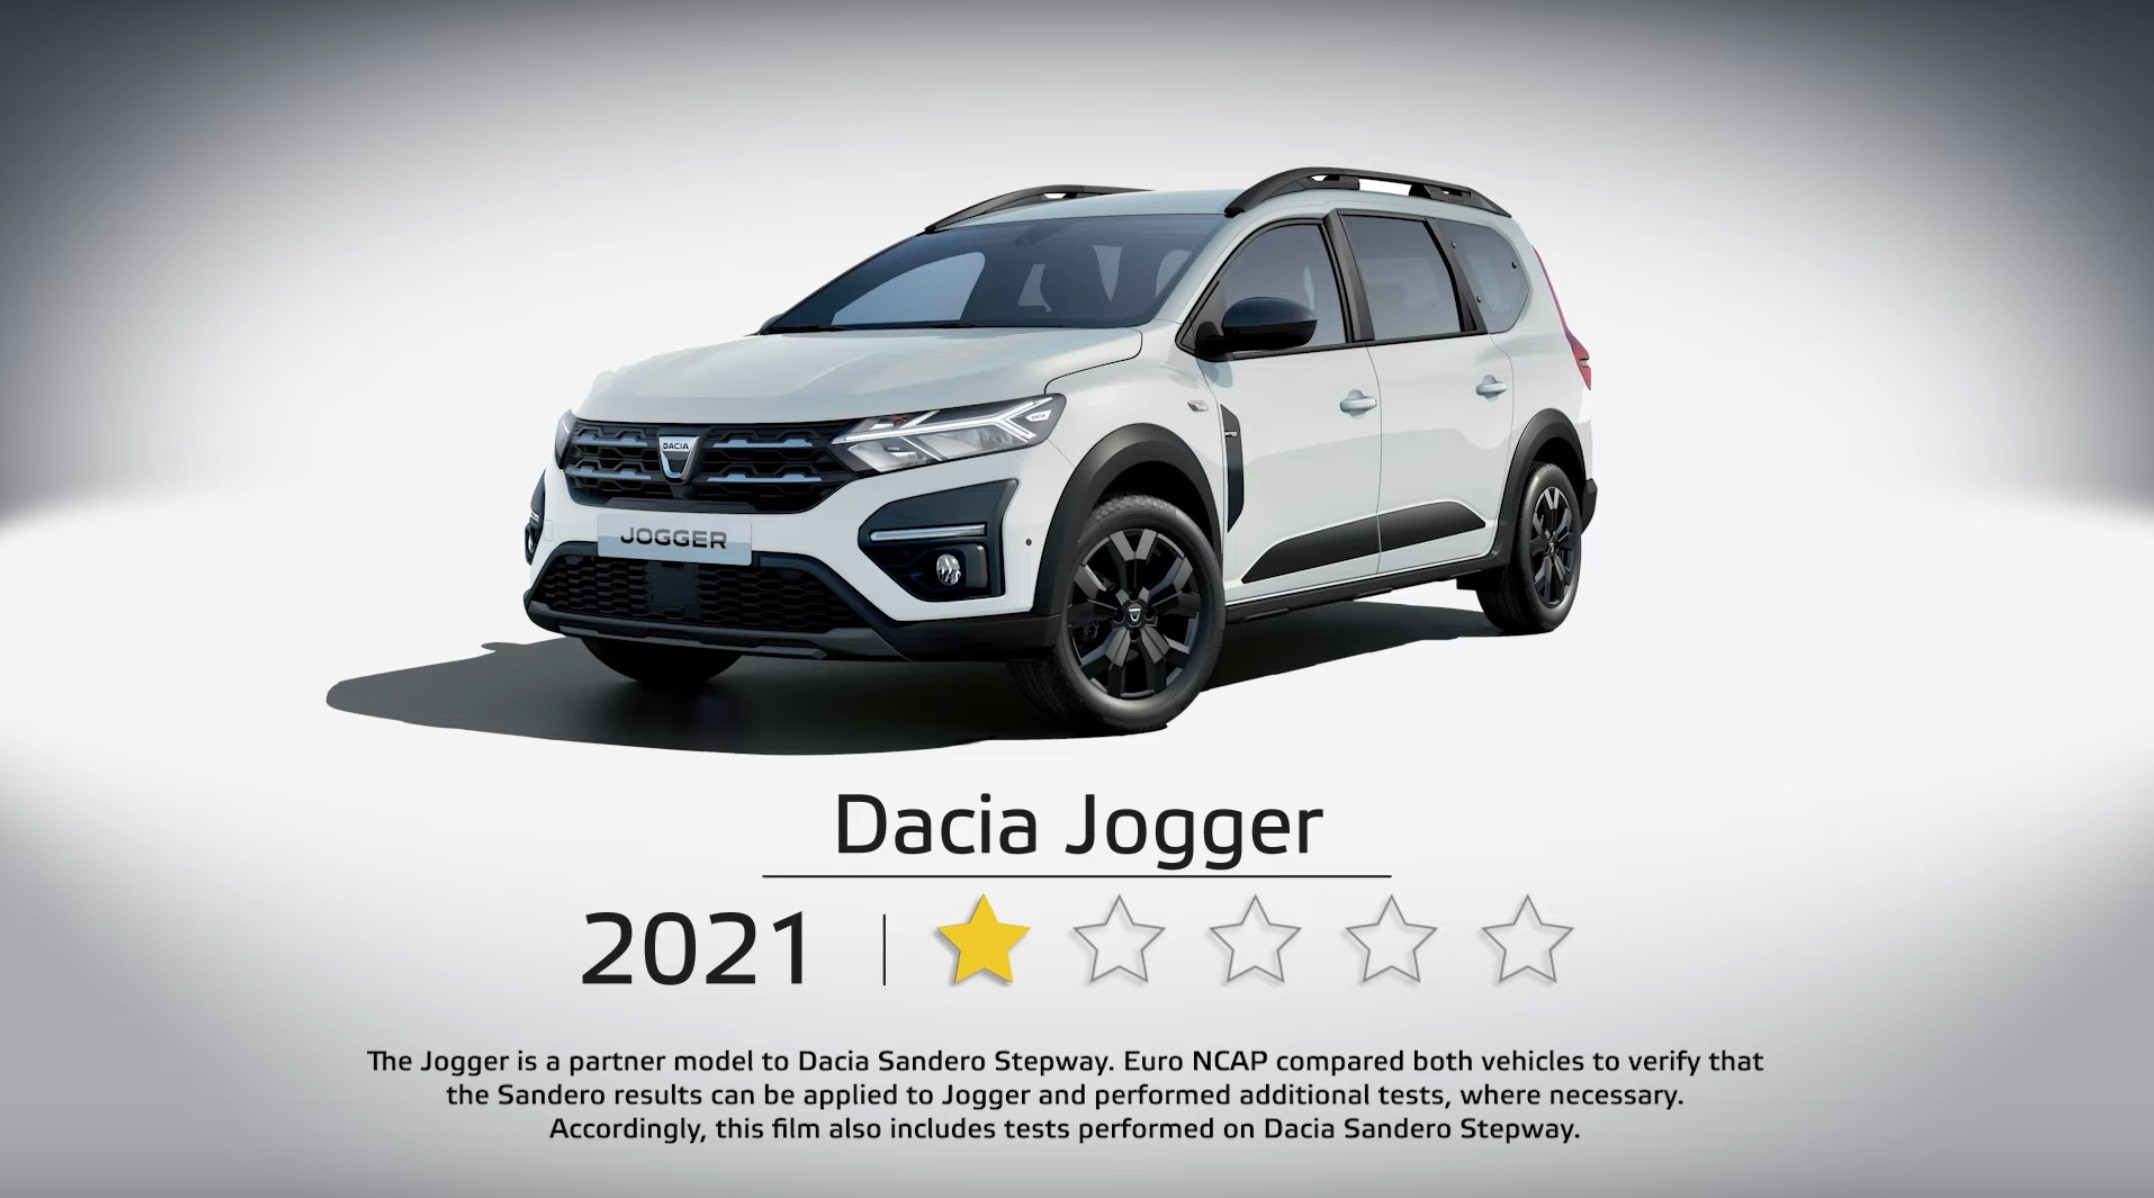 Dacia Jogger testovanie Euro NCAP bez testovania - použili výsledky Dacie Sandero Stepway.